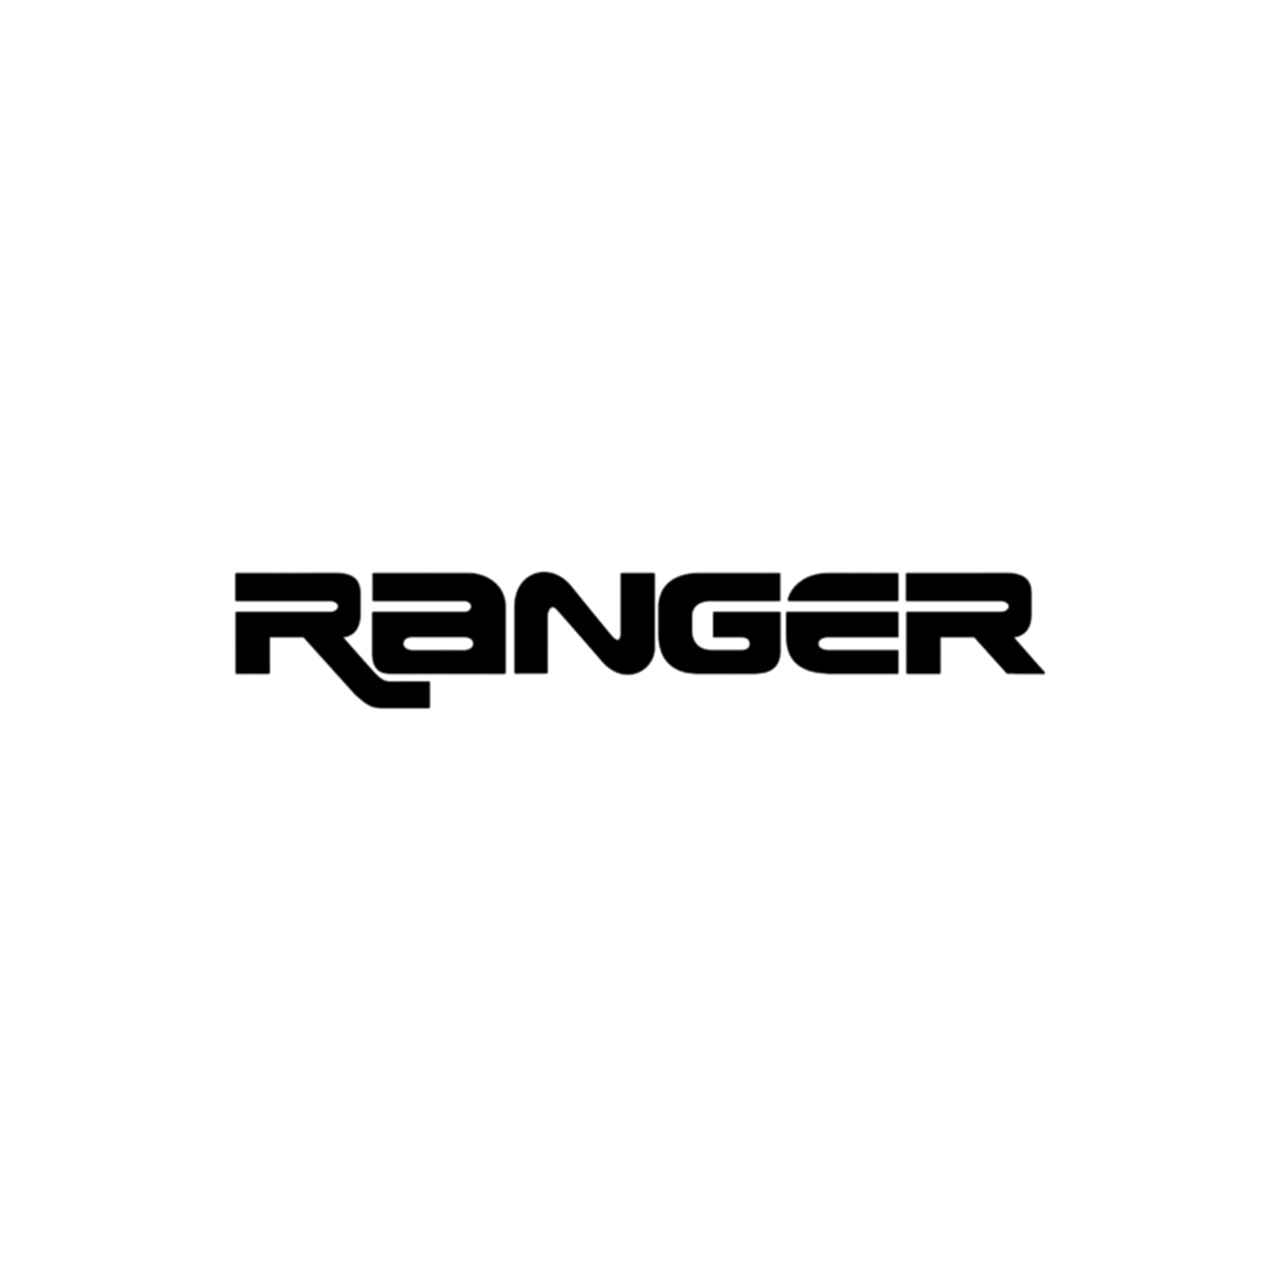 Ford Ranger Logo - Ford Ranger Vinyl Decal